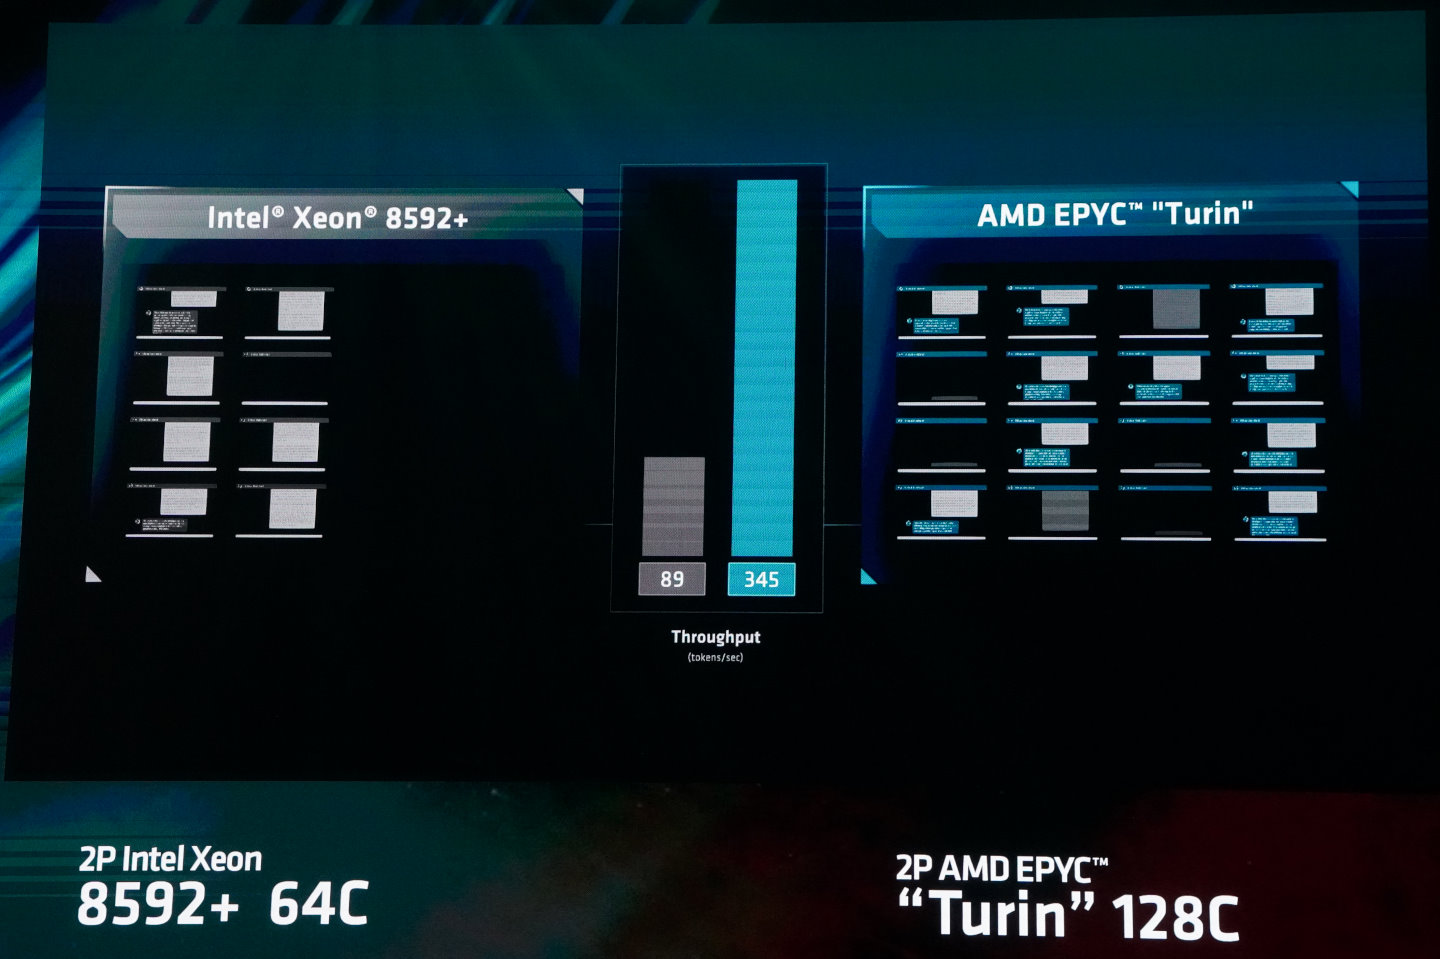 以雙路處理器的伺服器進行大型語言AI推論運算，第5代Epyc處理器吞吐量達到每秒345詞（Token），Intel Xeon Platinum 8592+處理器每秒僅有89詞。